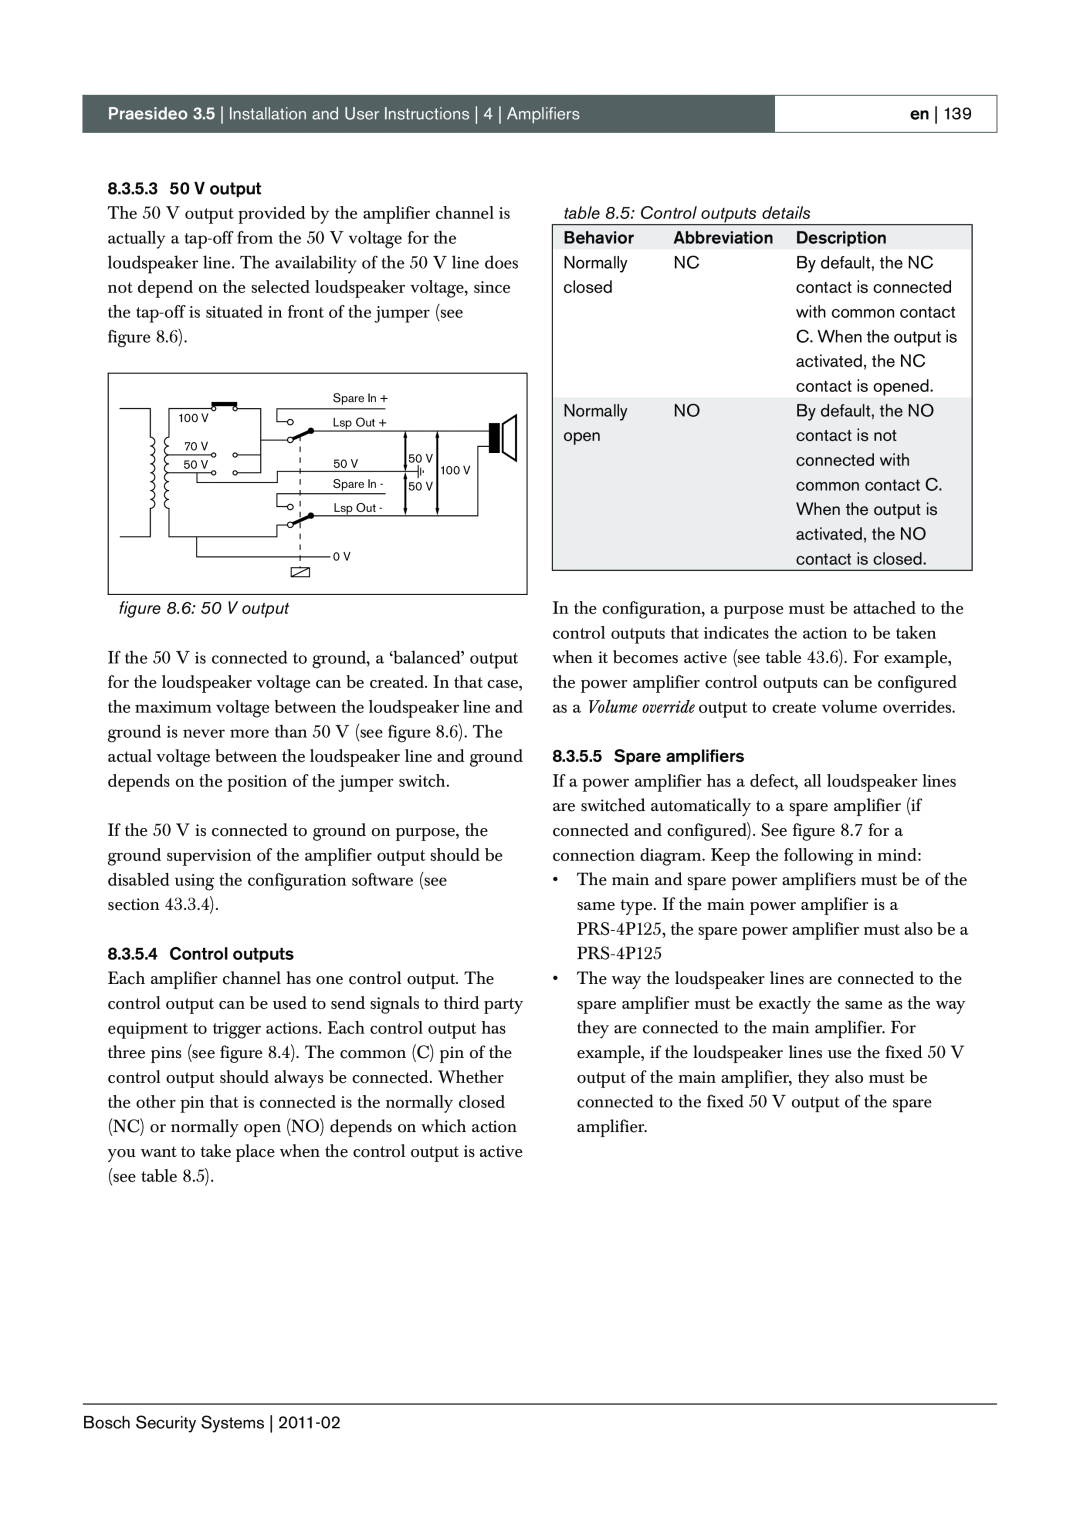 Bosch Appliances 3.5 manual 5: Control outputs details, en 